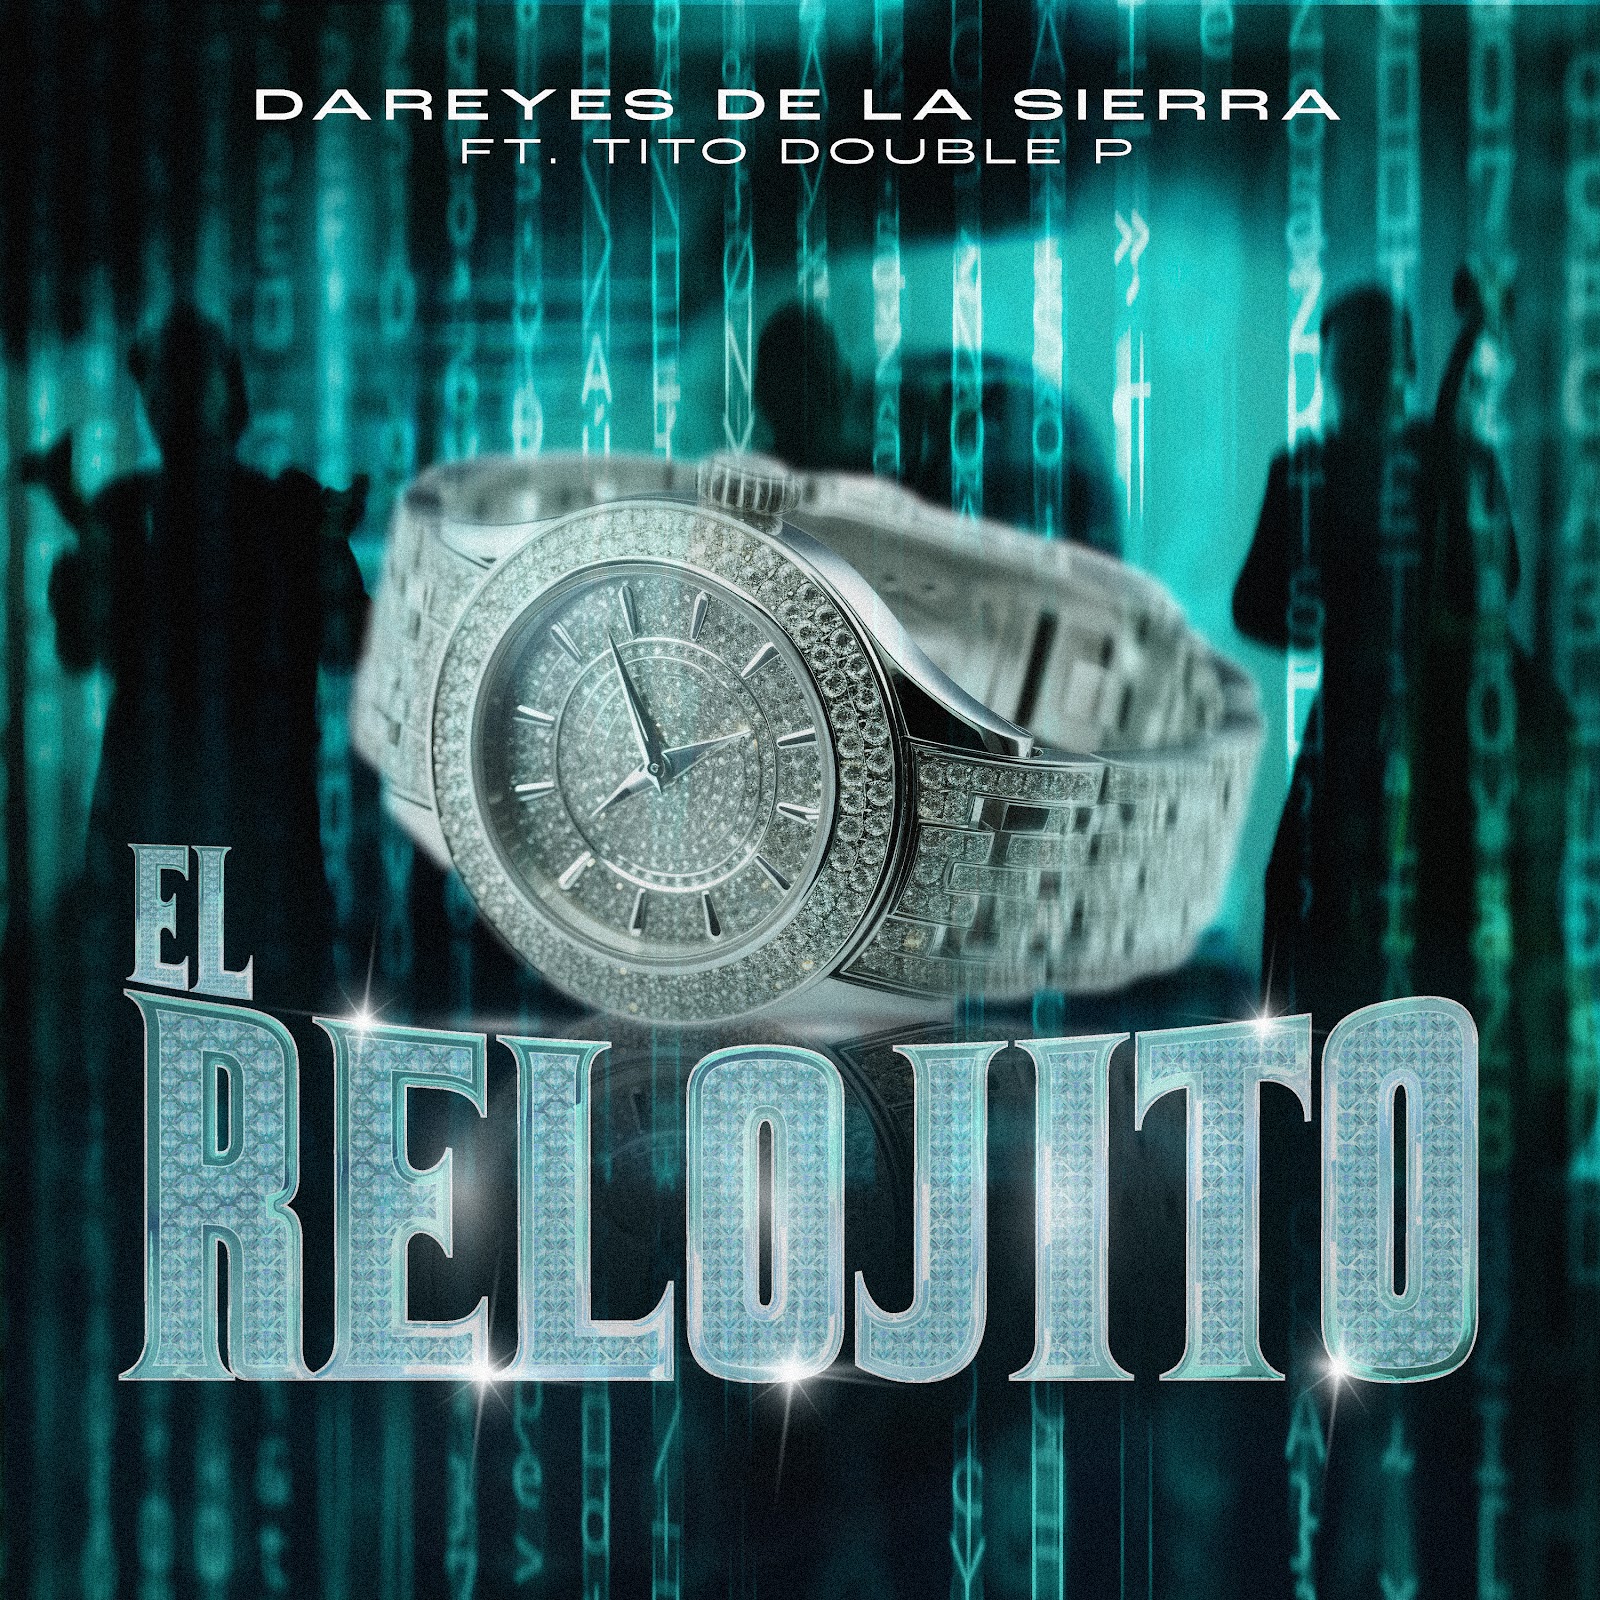 DAREYES DE LA SIERRA y TITO DOUBLE P se unen en sencillo “El Relojito”